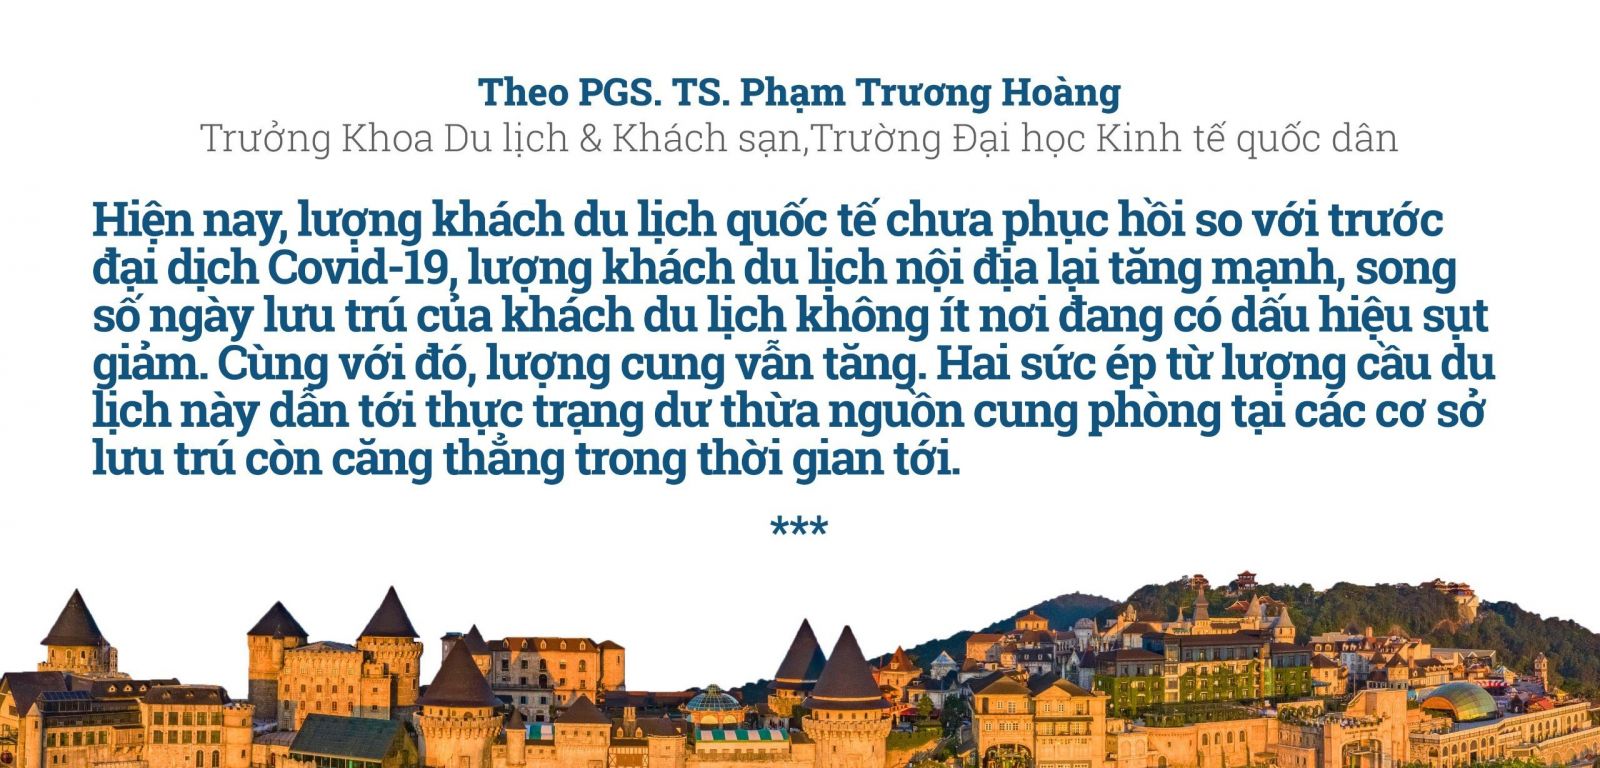 PGS. TS. Phạm Trương Hoàng: “Sức khoẻ” doanh nghiệp bất động sản du lịch vẫn còn “yếu”- Ảnh 1.